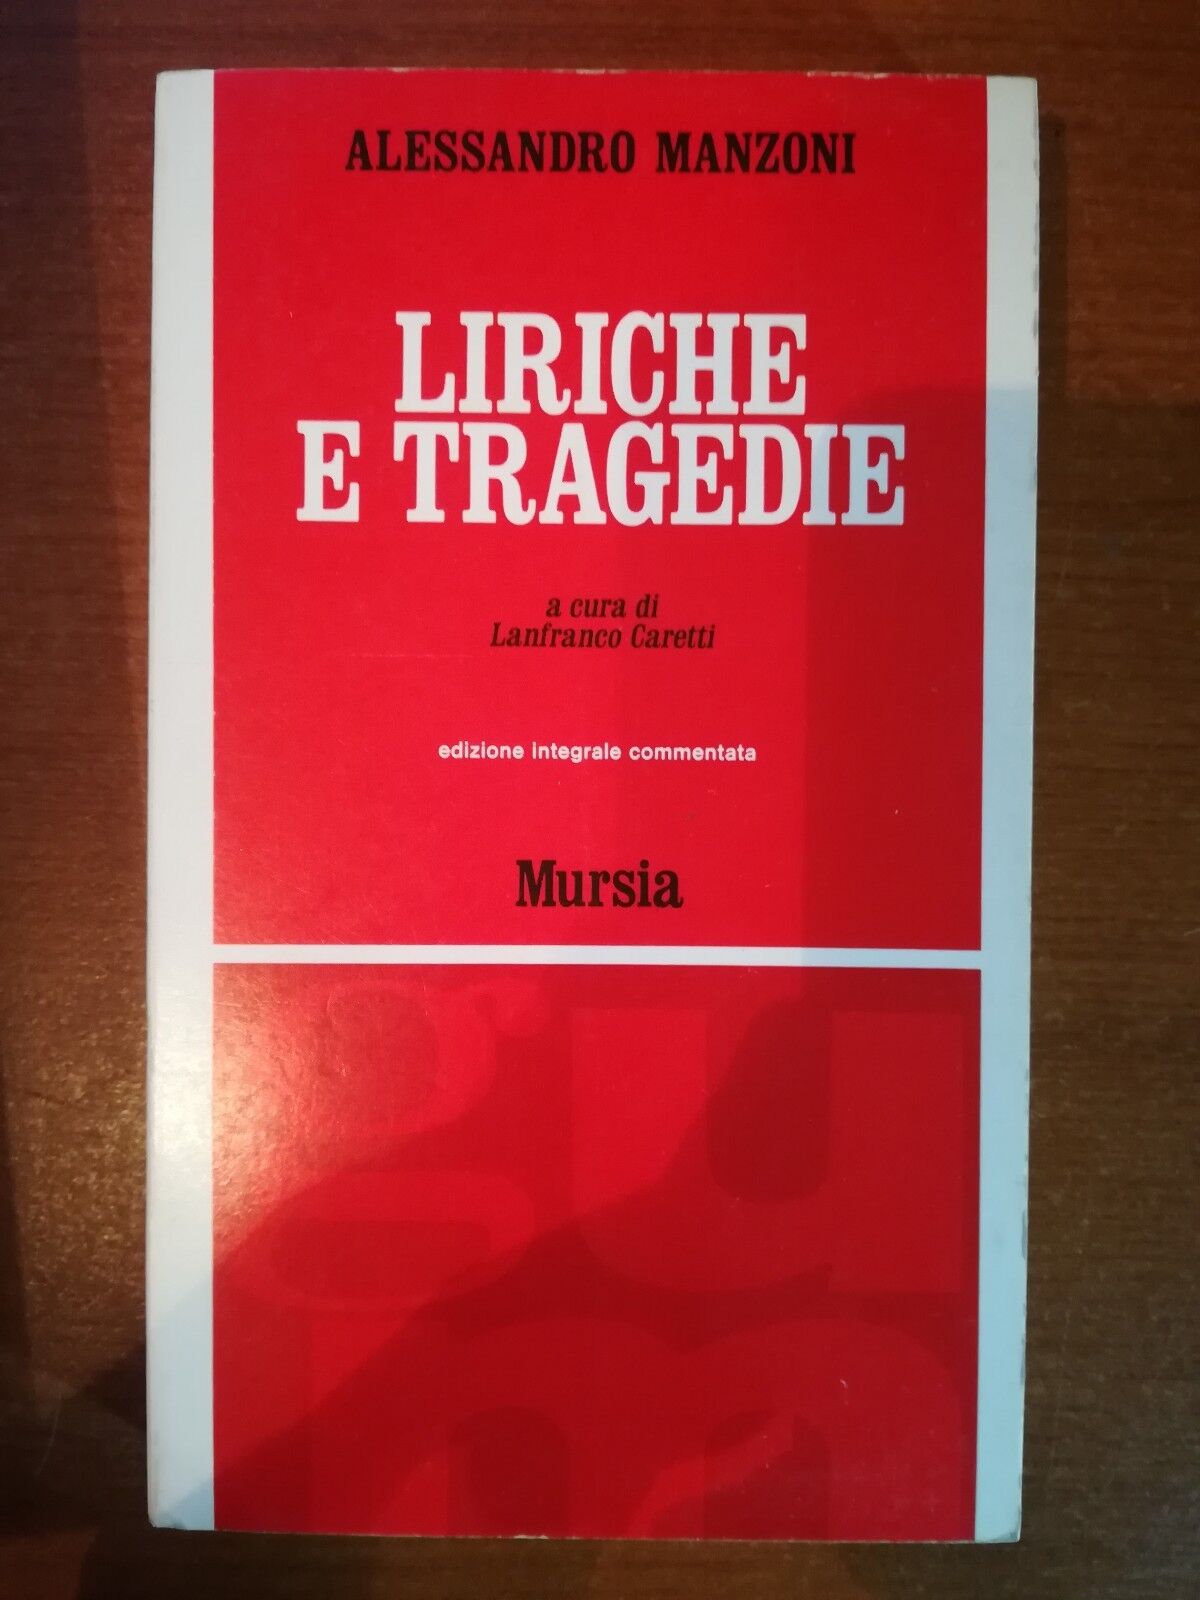   Liriche e tragedie -  Alessandro Manzoni,  1967,  Mursia M